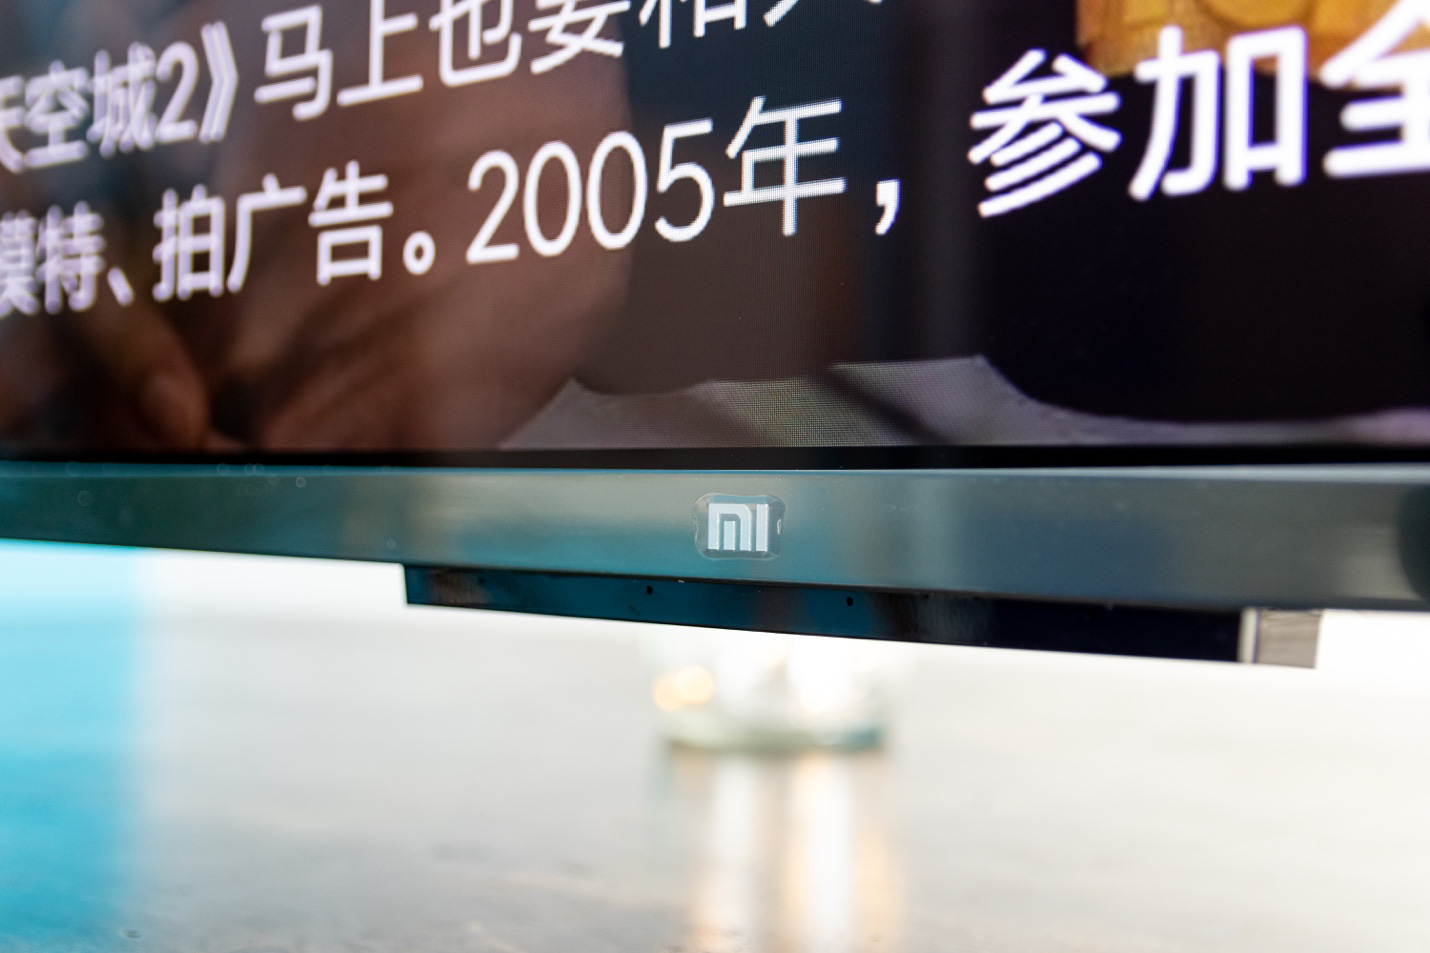 Xiaomi Mi TV 5 PRO: Định vị trong phân khúc TV cao cấp, liệu chiếc TV này có thật sự “PRO” như cái tên? - Ảnh 3.